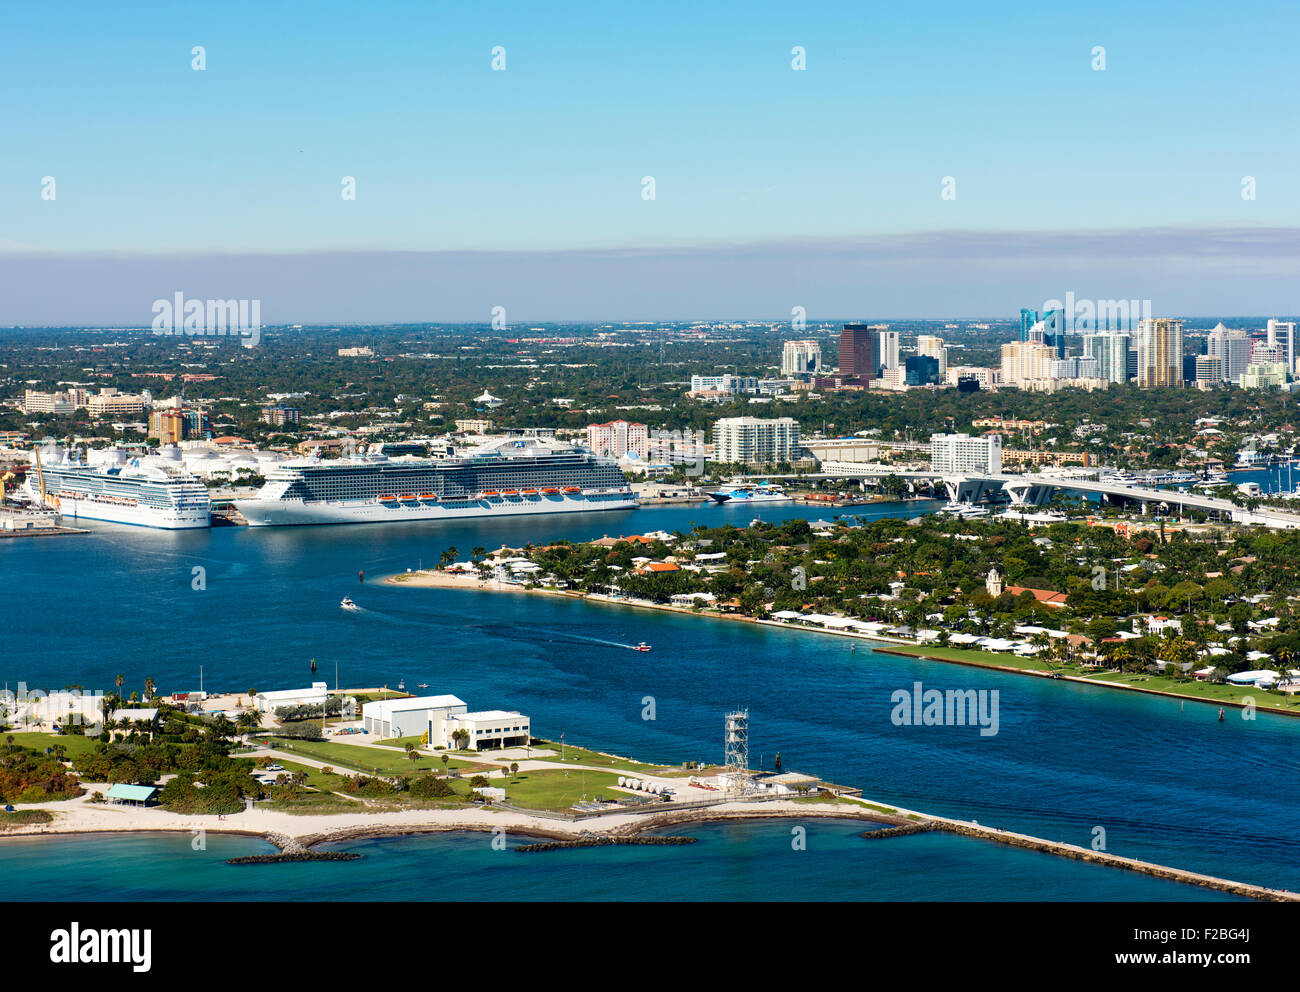 Los cruceros en el puerto de Fort Lauderdale. Foto de stock